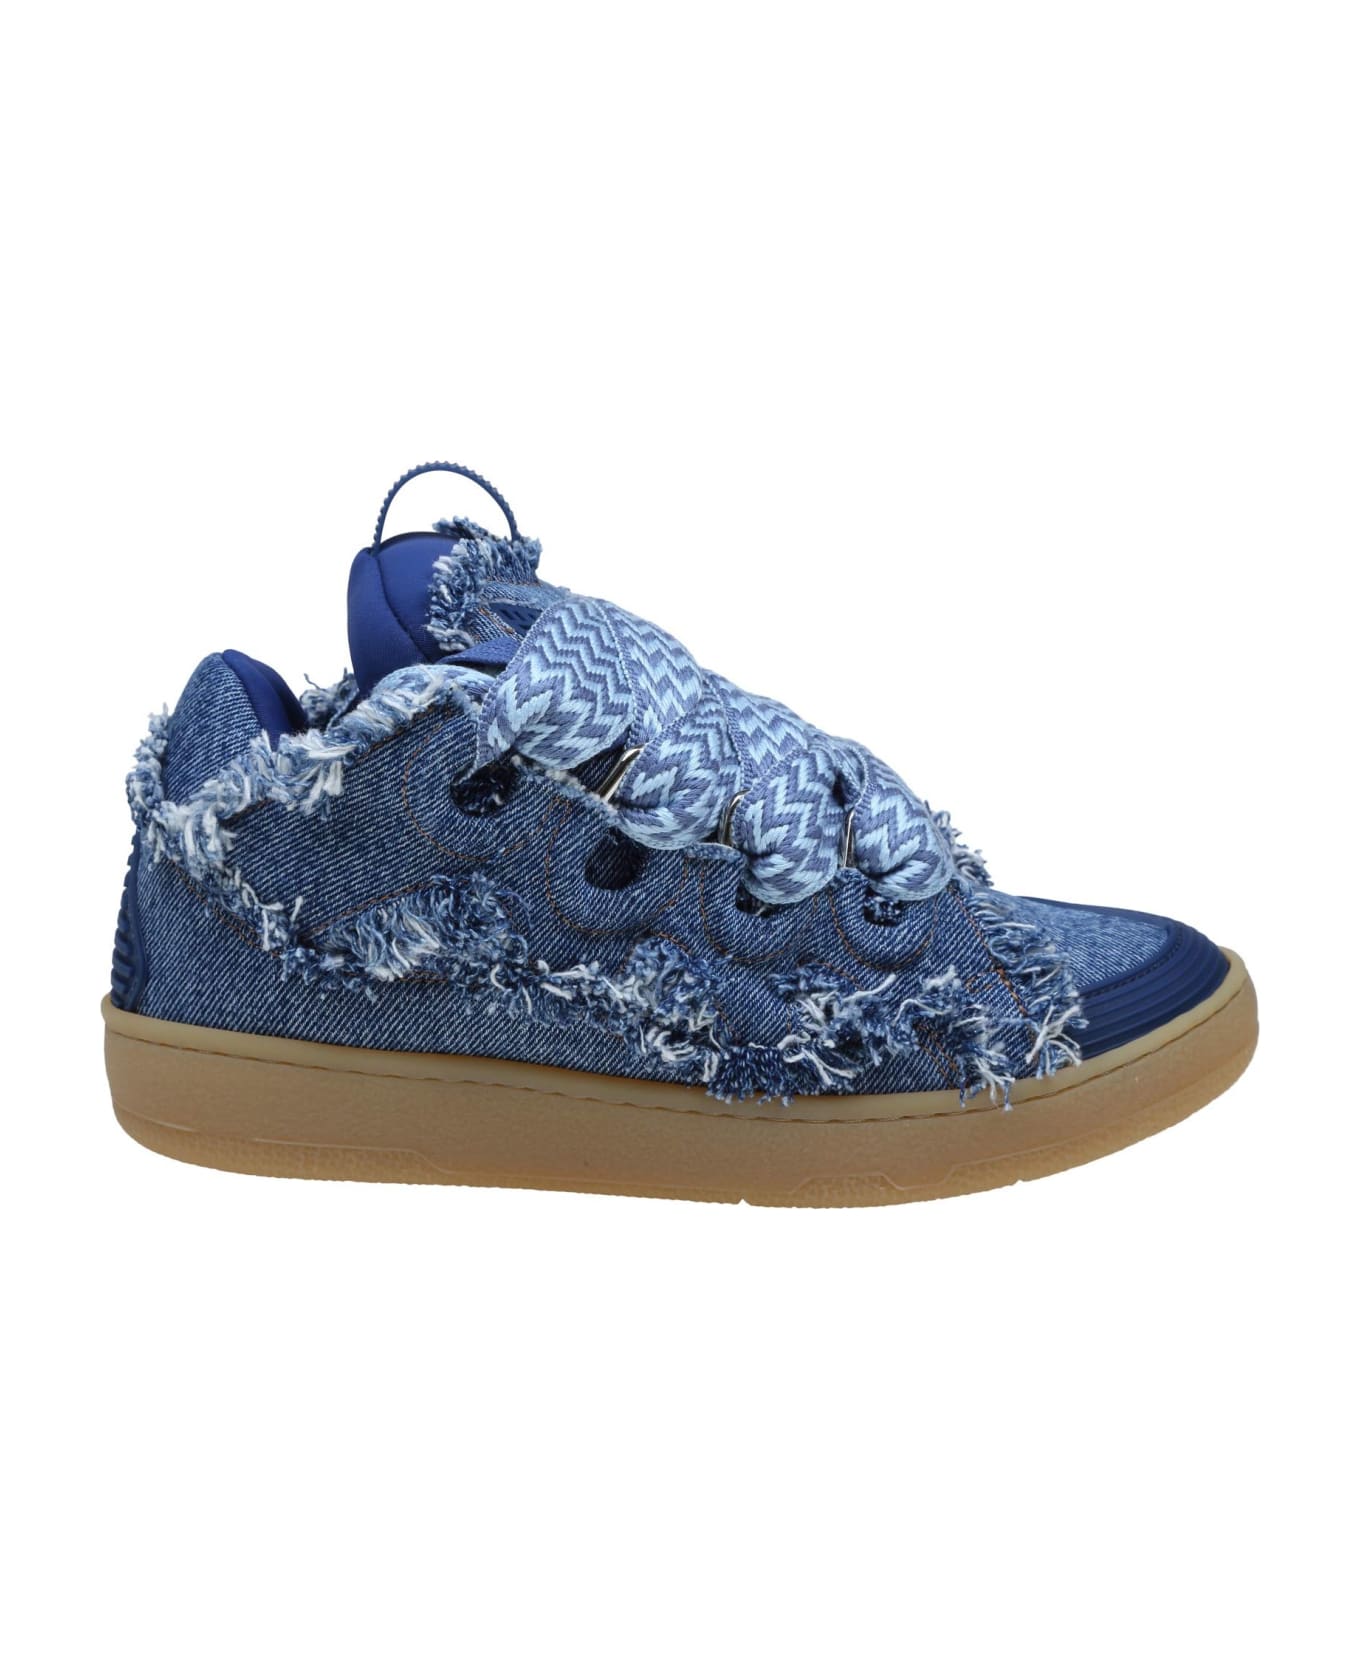 Lanvin Curb Sneakers In Blue Denim - DENIM BLUE